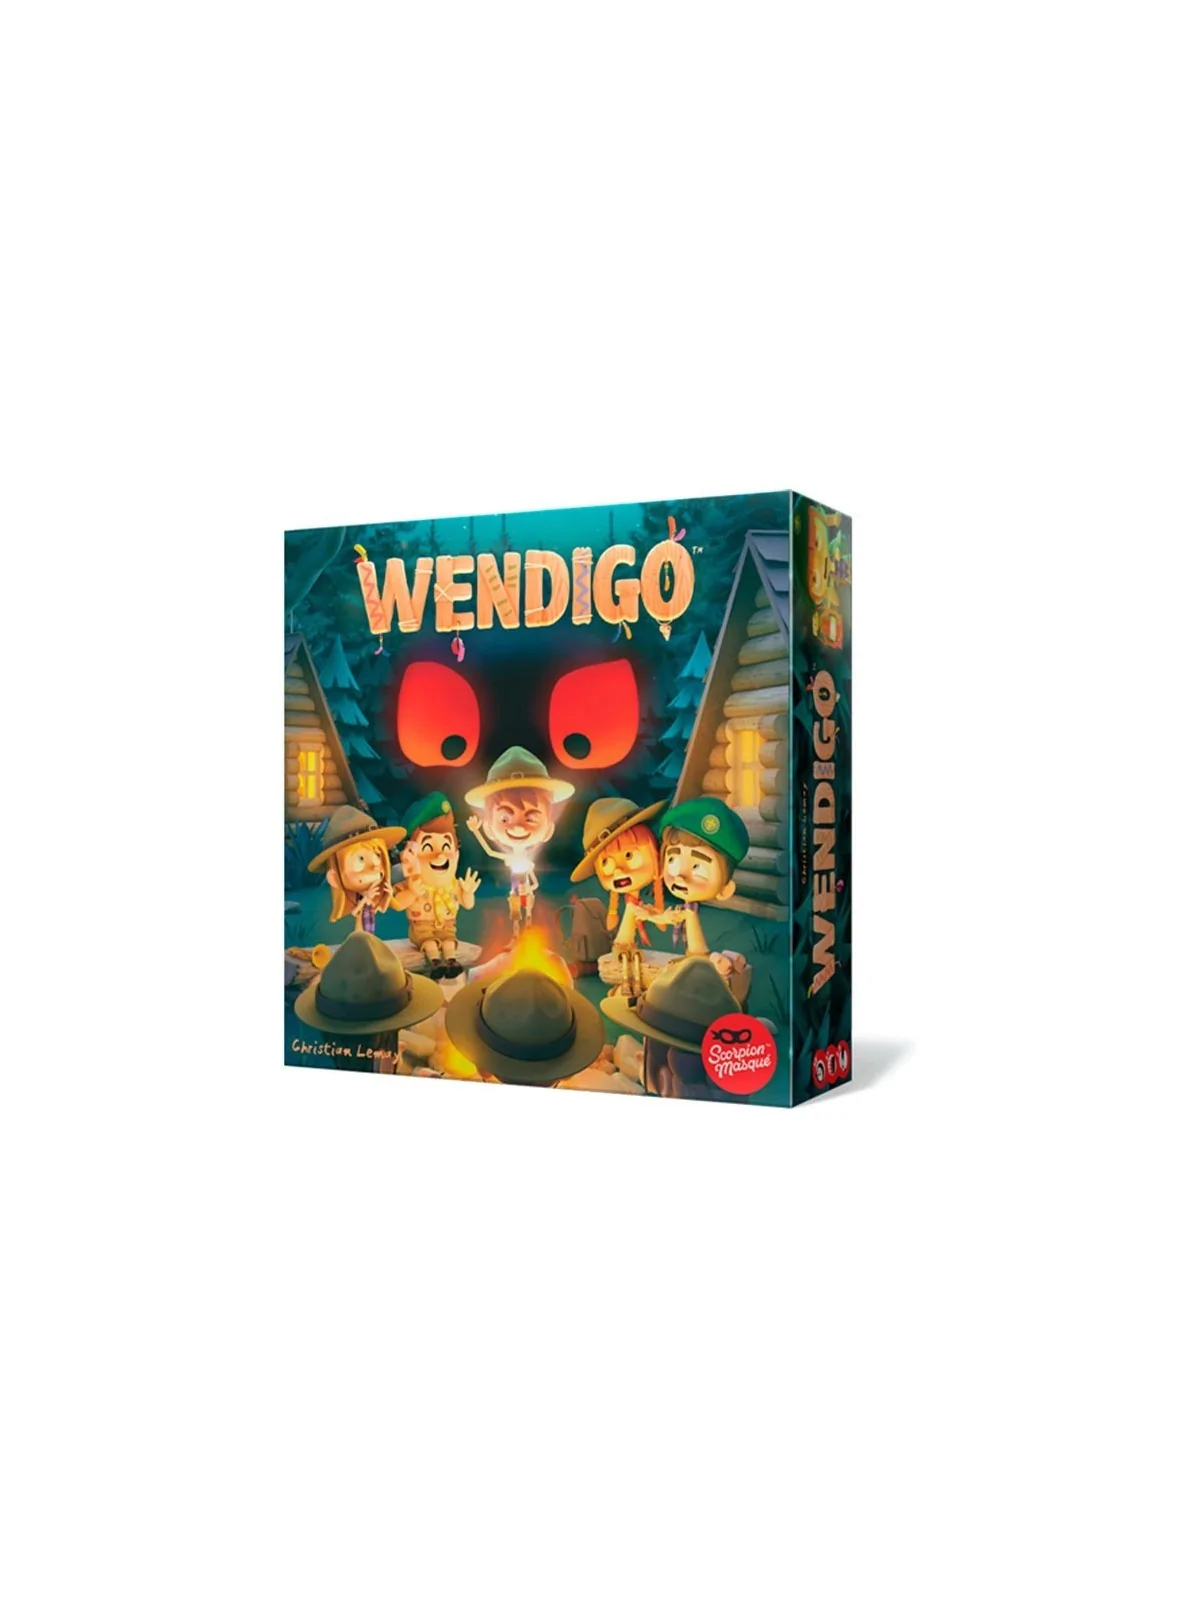 Comprar Wendigo barato al mejor precio 17,99 € de Asmodee